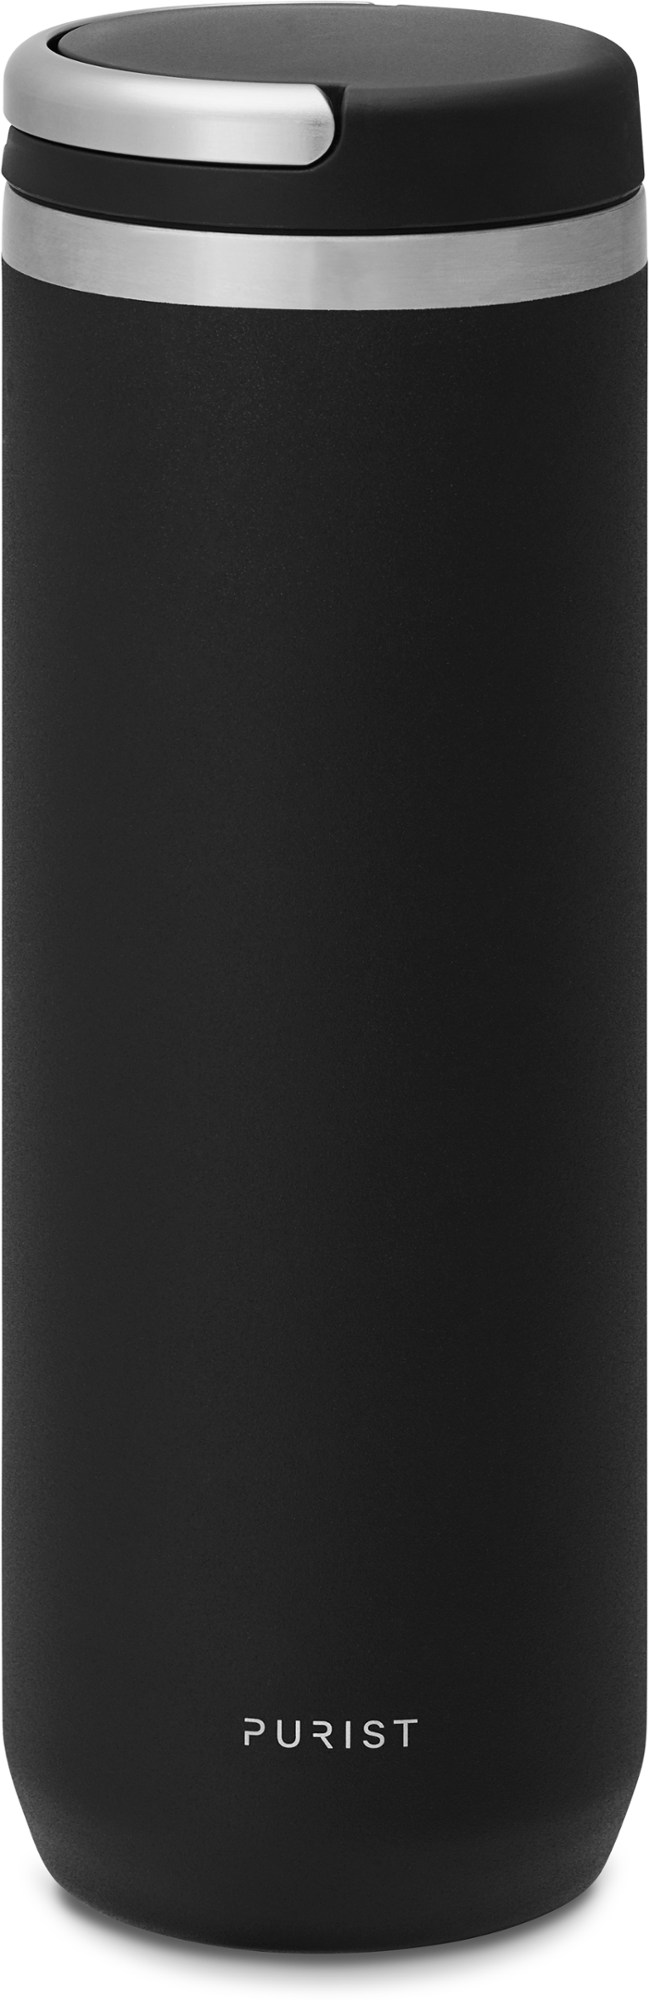 Вакуумная бутылка для воды Mover с крышкой Element - 18 эт. унция Purist, черный 500 мл умный автомобильный термос чашка чай кофе вакуумная фляжка дисплей температуры умная бутылка для воды для seat fr leon mk2 mk3 5f 6